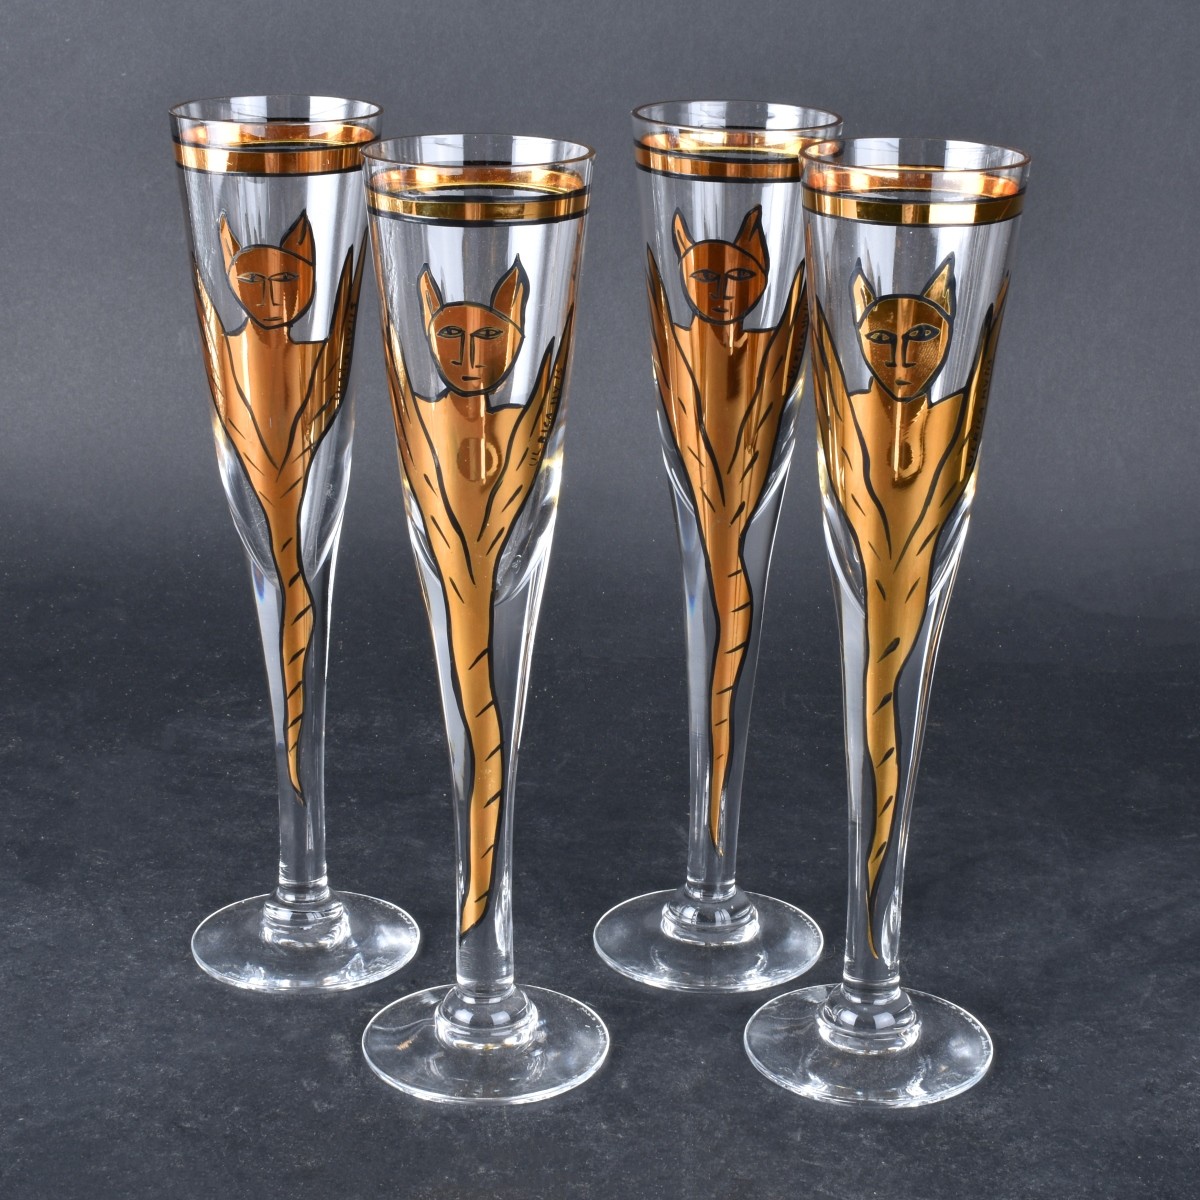 Four (4) Kosta Boda "Goldie" Art Glass Champagne